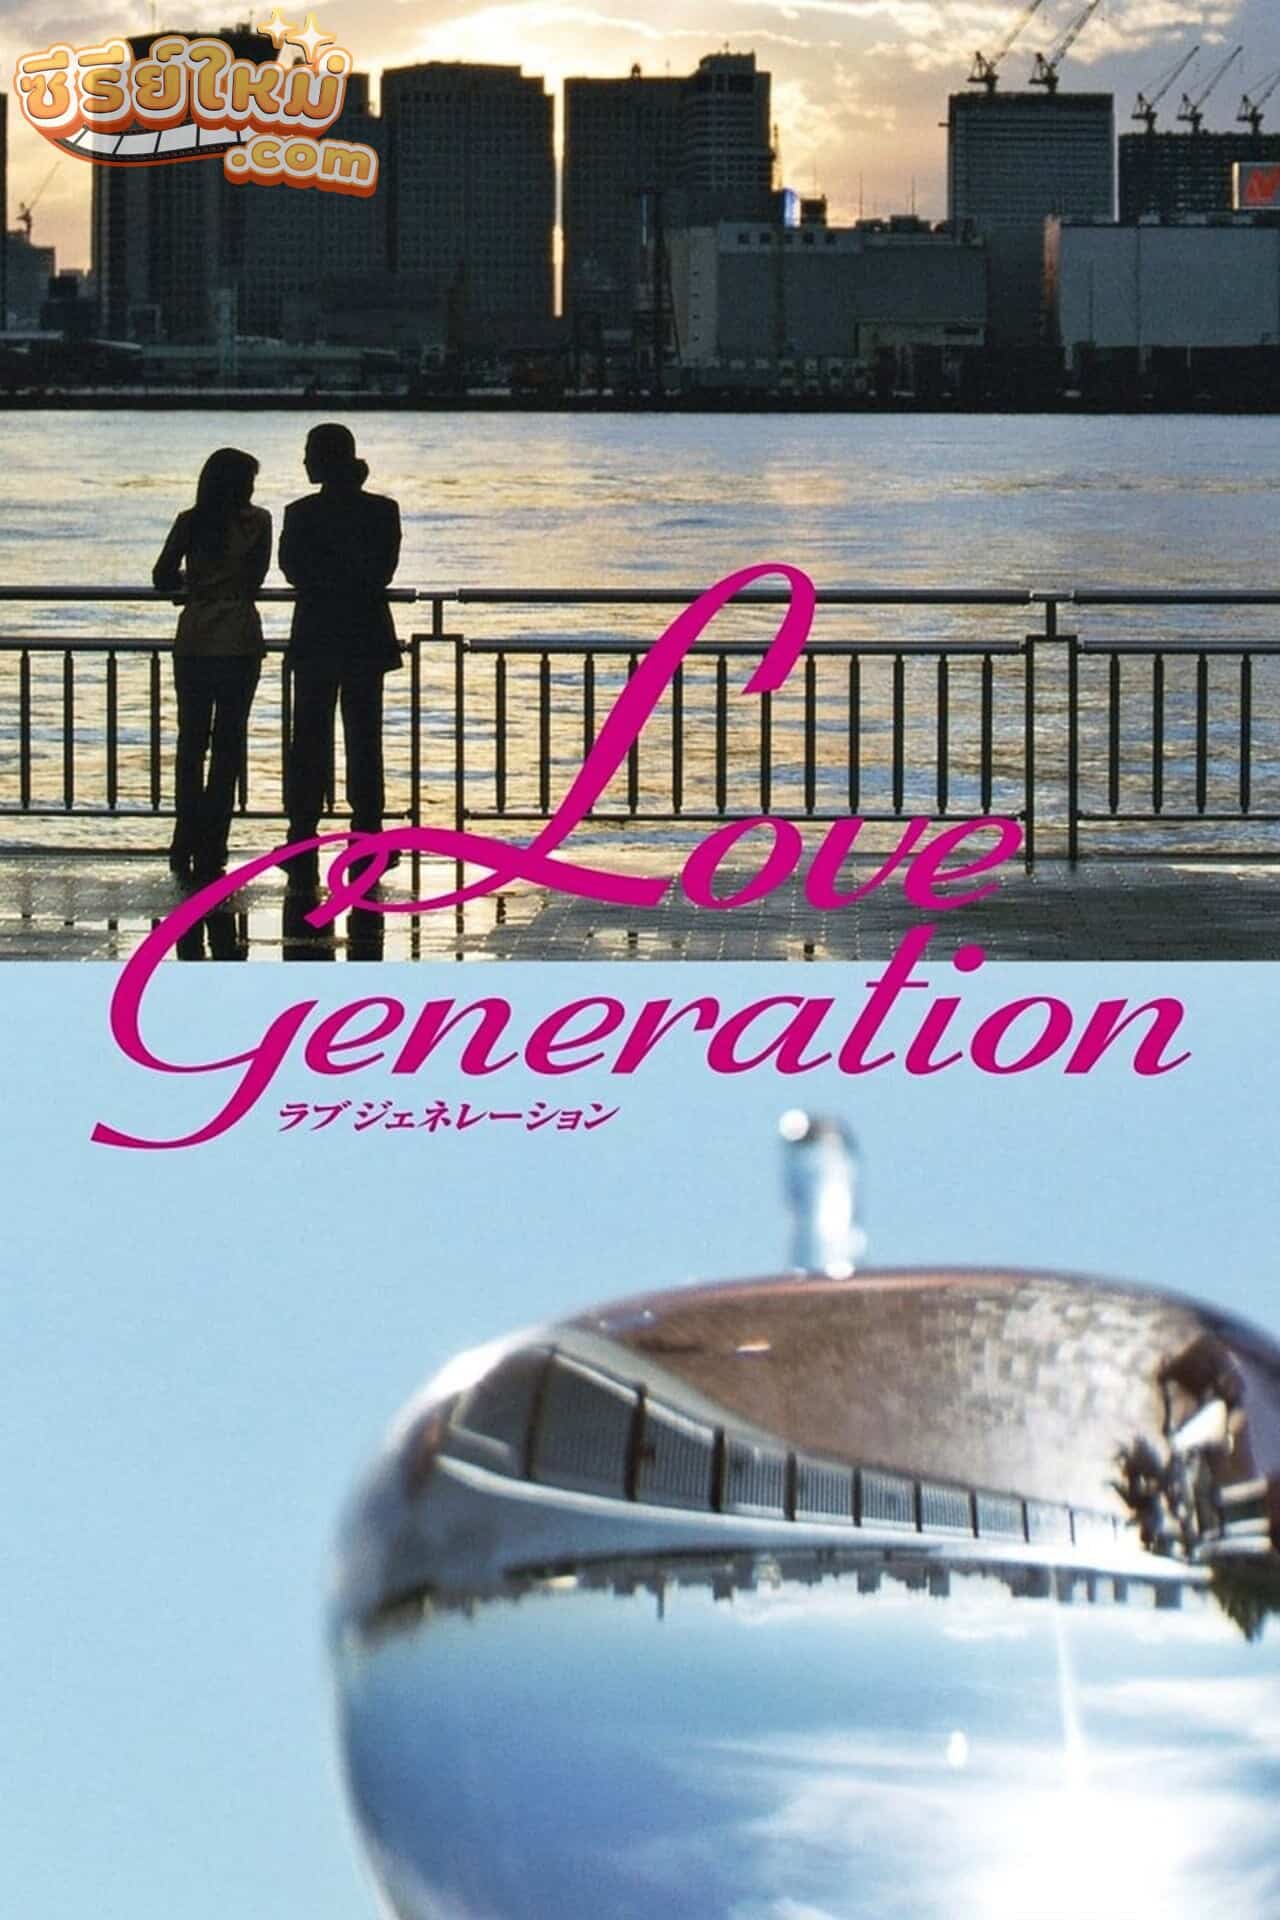 Love Generation รักนี้เพื่อเธอ (1997)